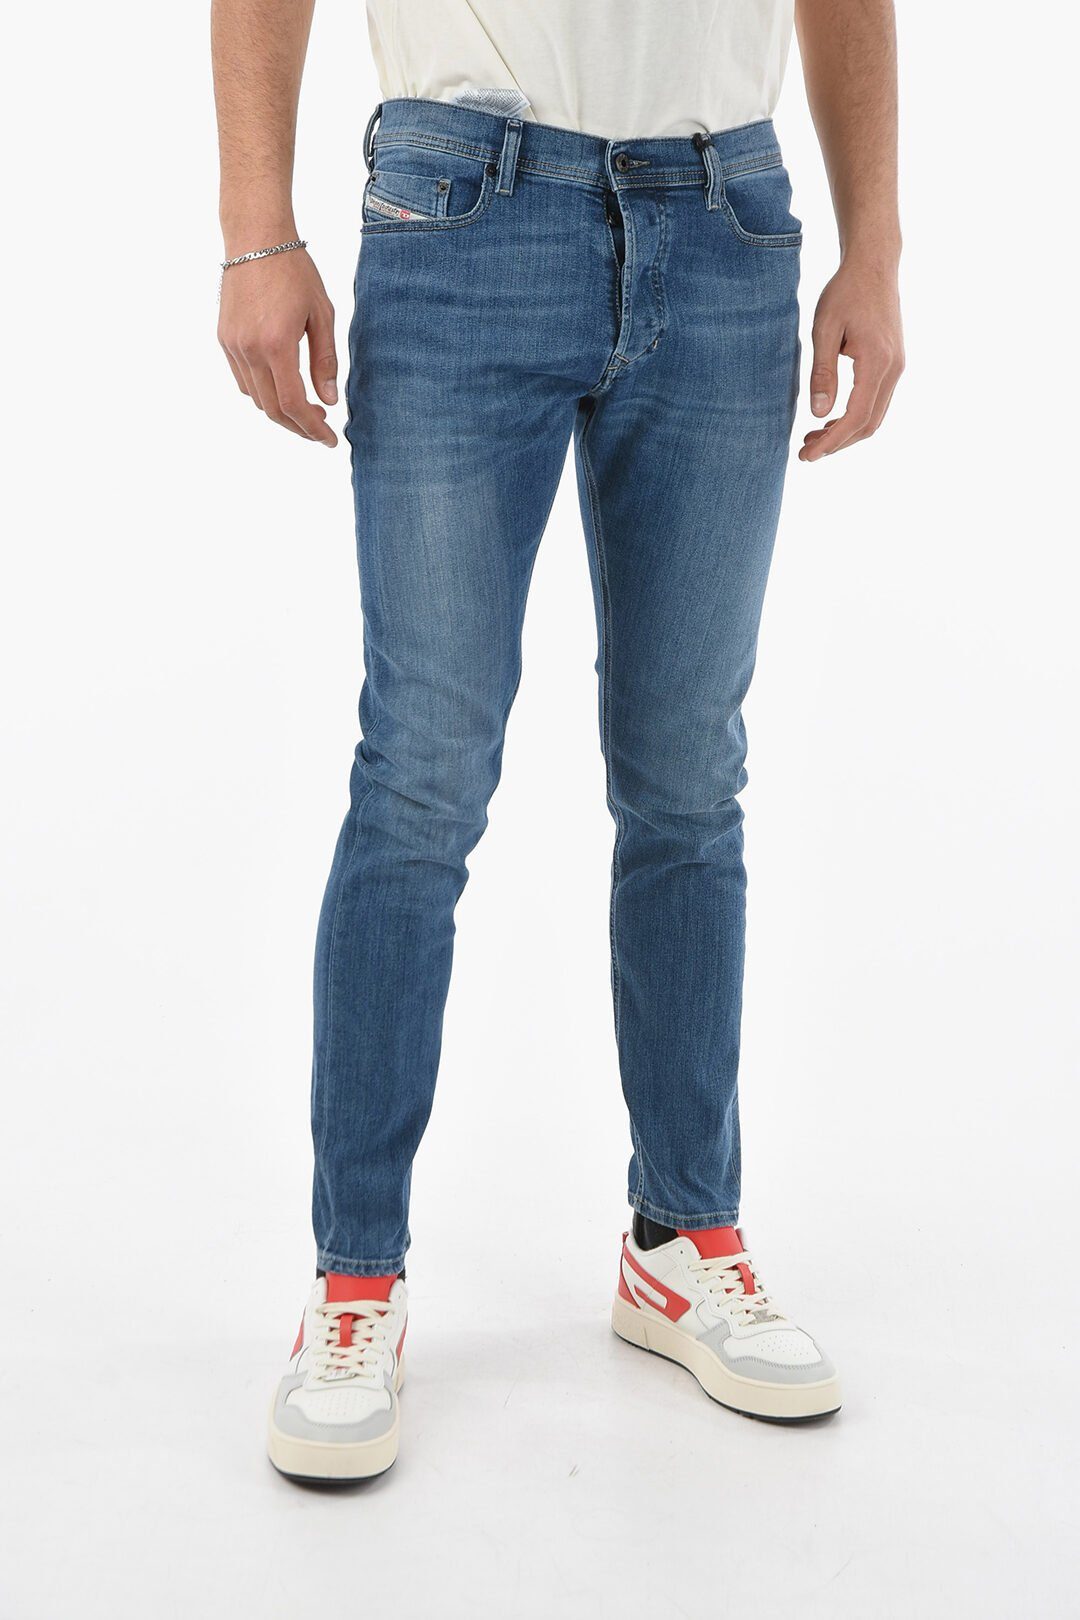 Herren Pocket-Style, Jeans Tepphar Diesel Blau, 0857P 5 Stretch Röhrenjeans, Slim-fit-Jeans Diesel